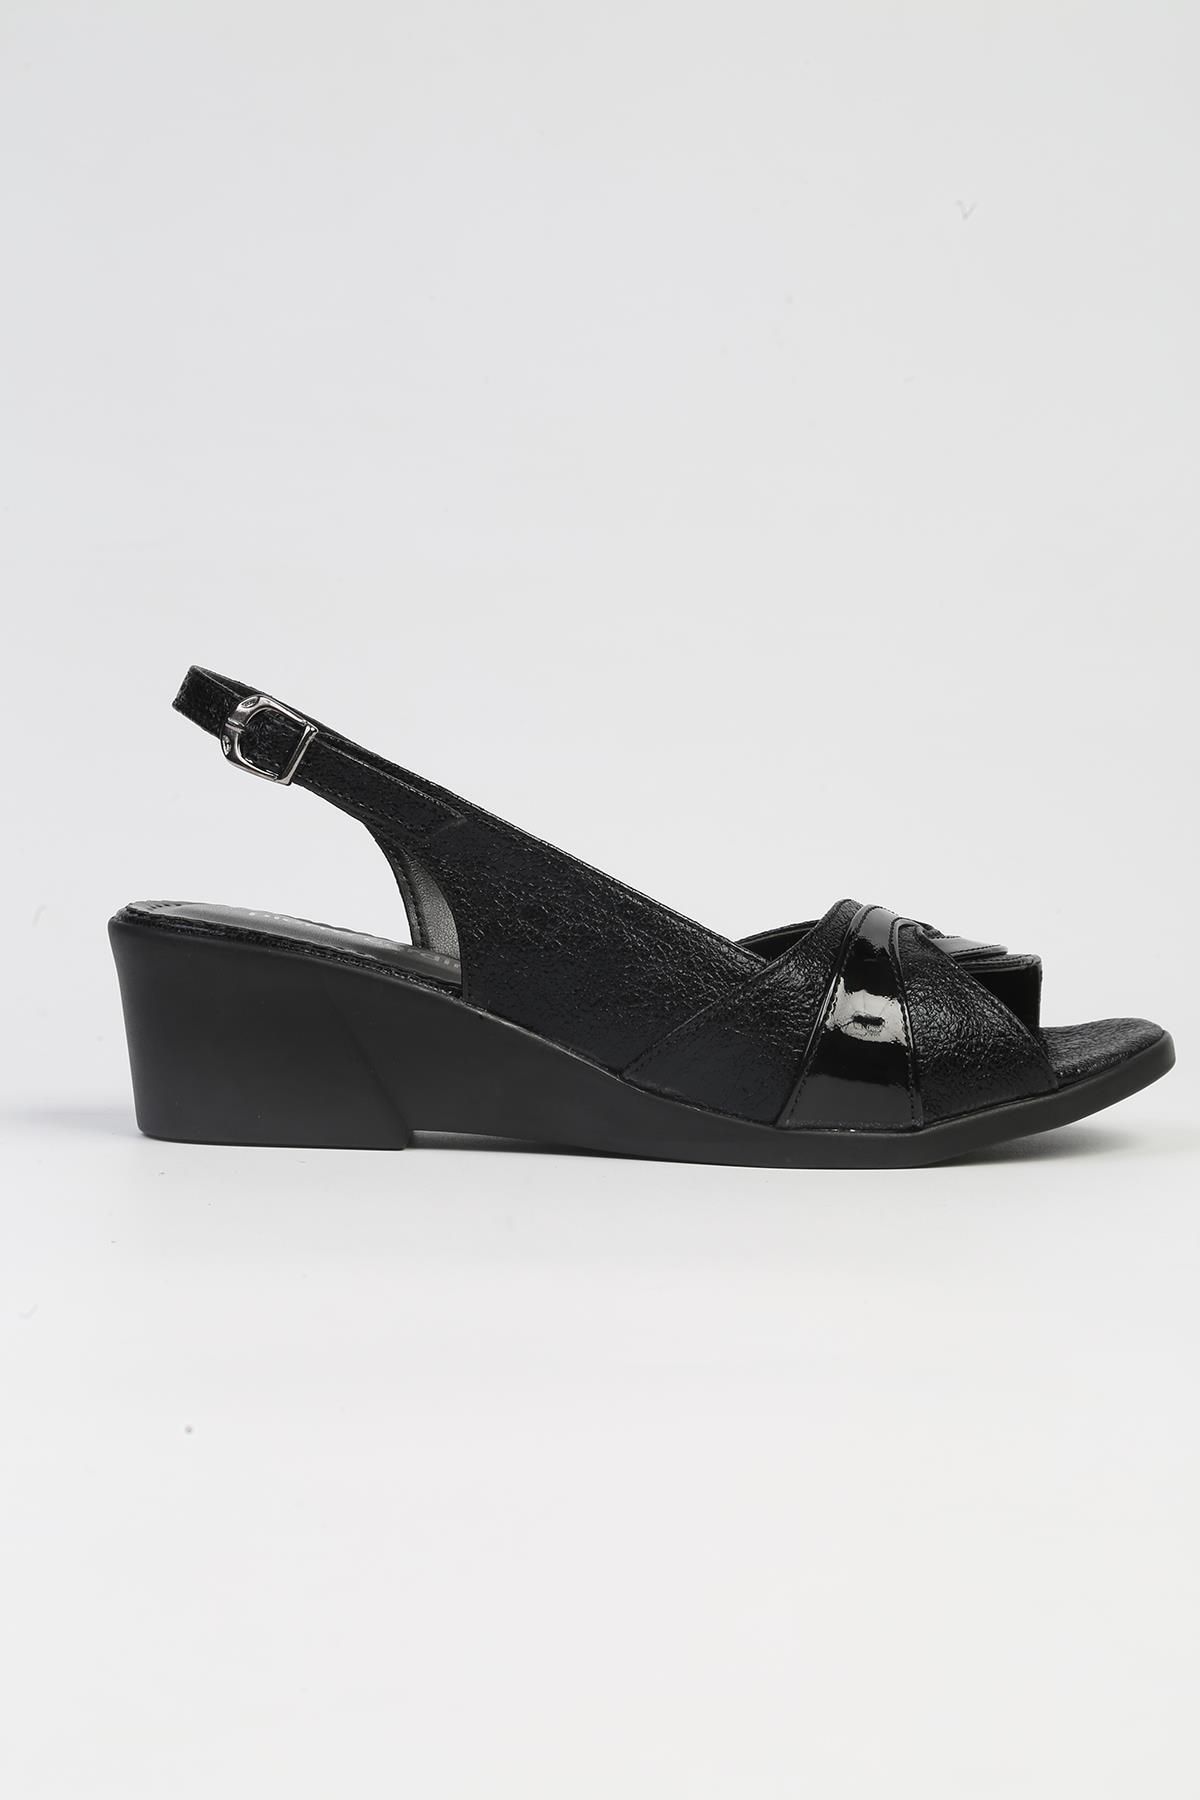 Pierre Cardin ® | PC-53031- 3341 Siyah-Kadın Topuklu Ayakkabı